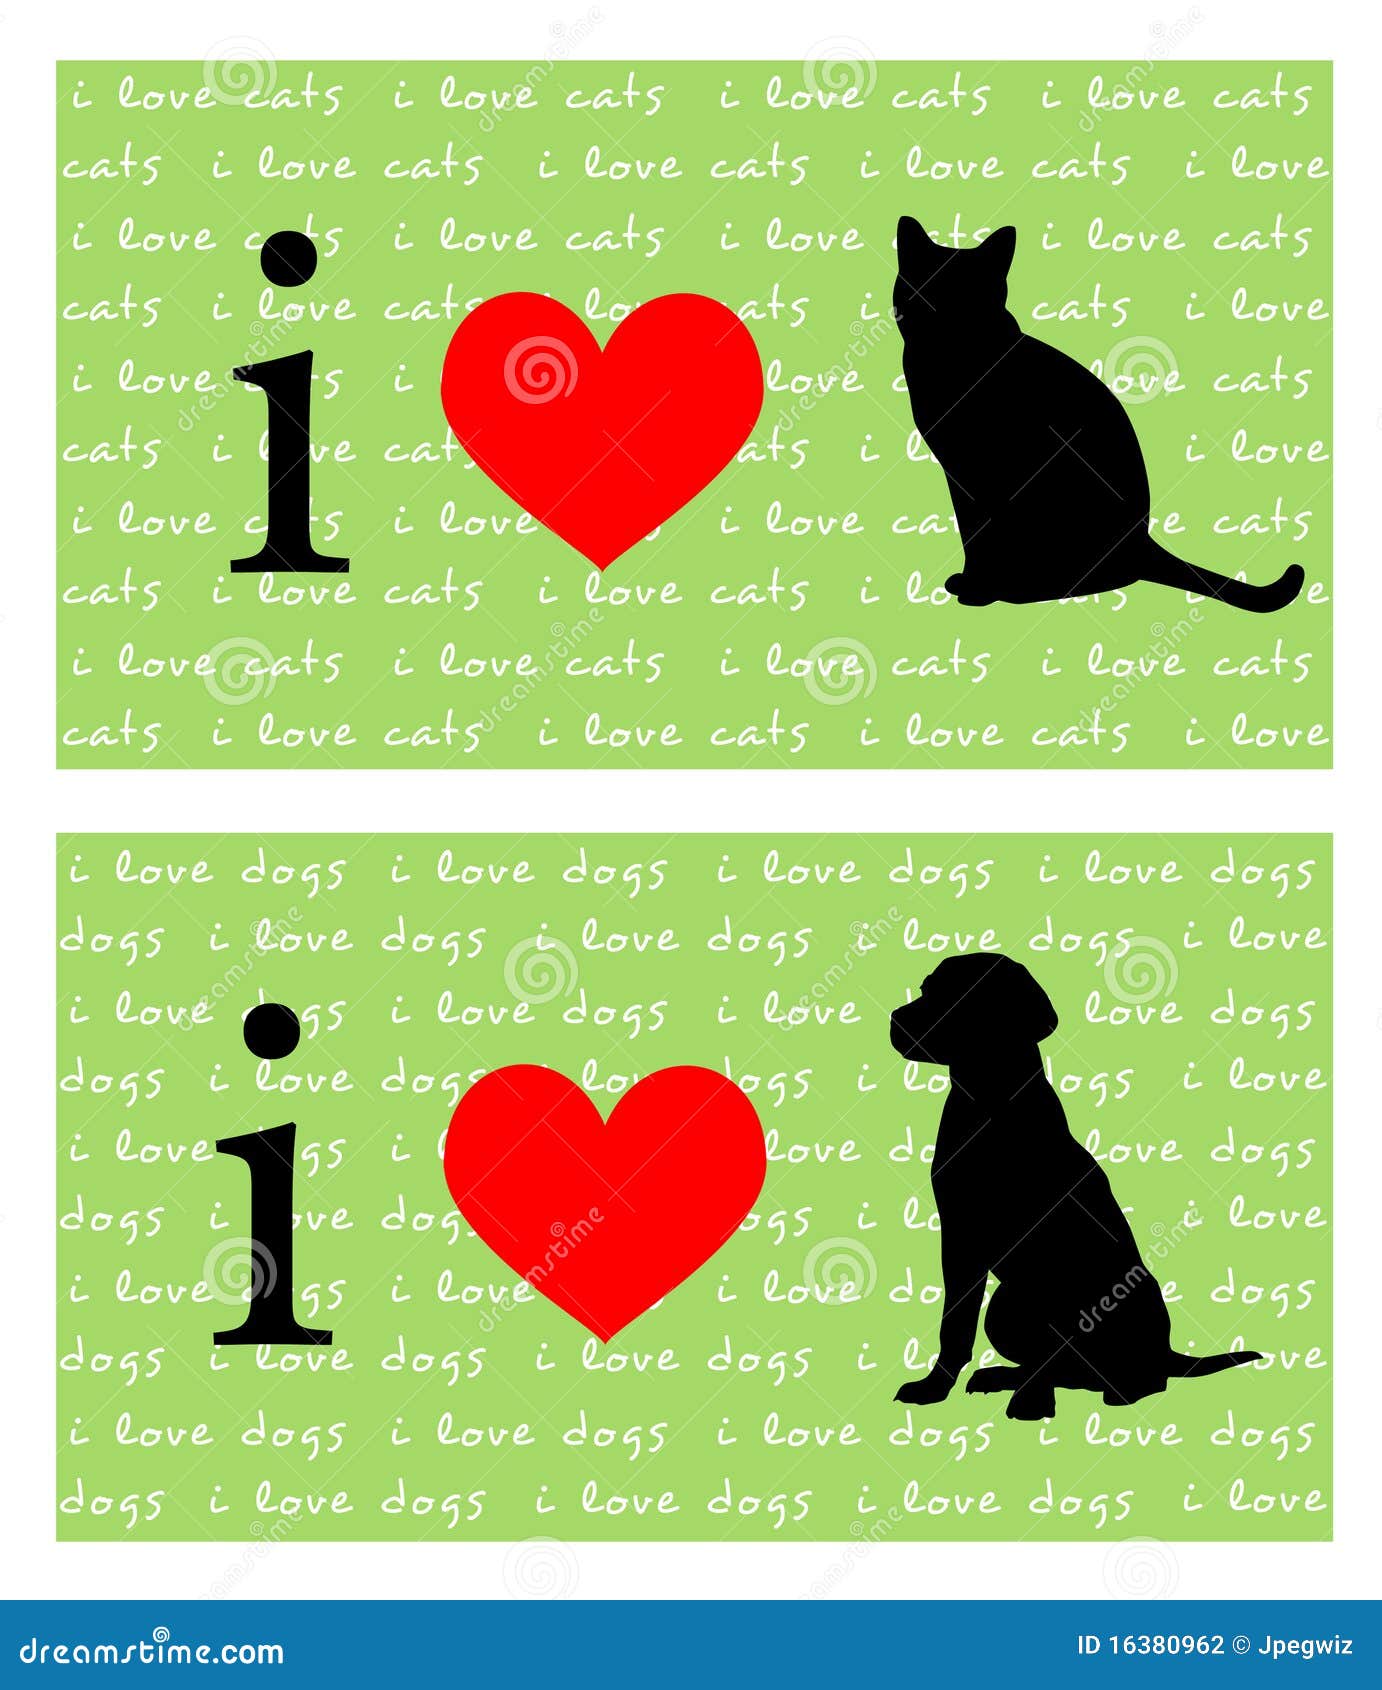 Лов 55. Сердечко кошка и собака. Картинка i Love Cat. Love Cat Love Dog косметика. I Love Dogs картинки.